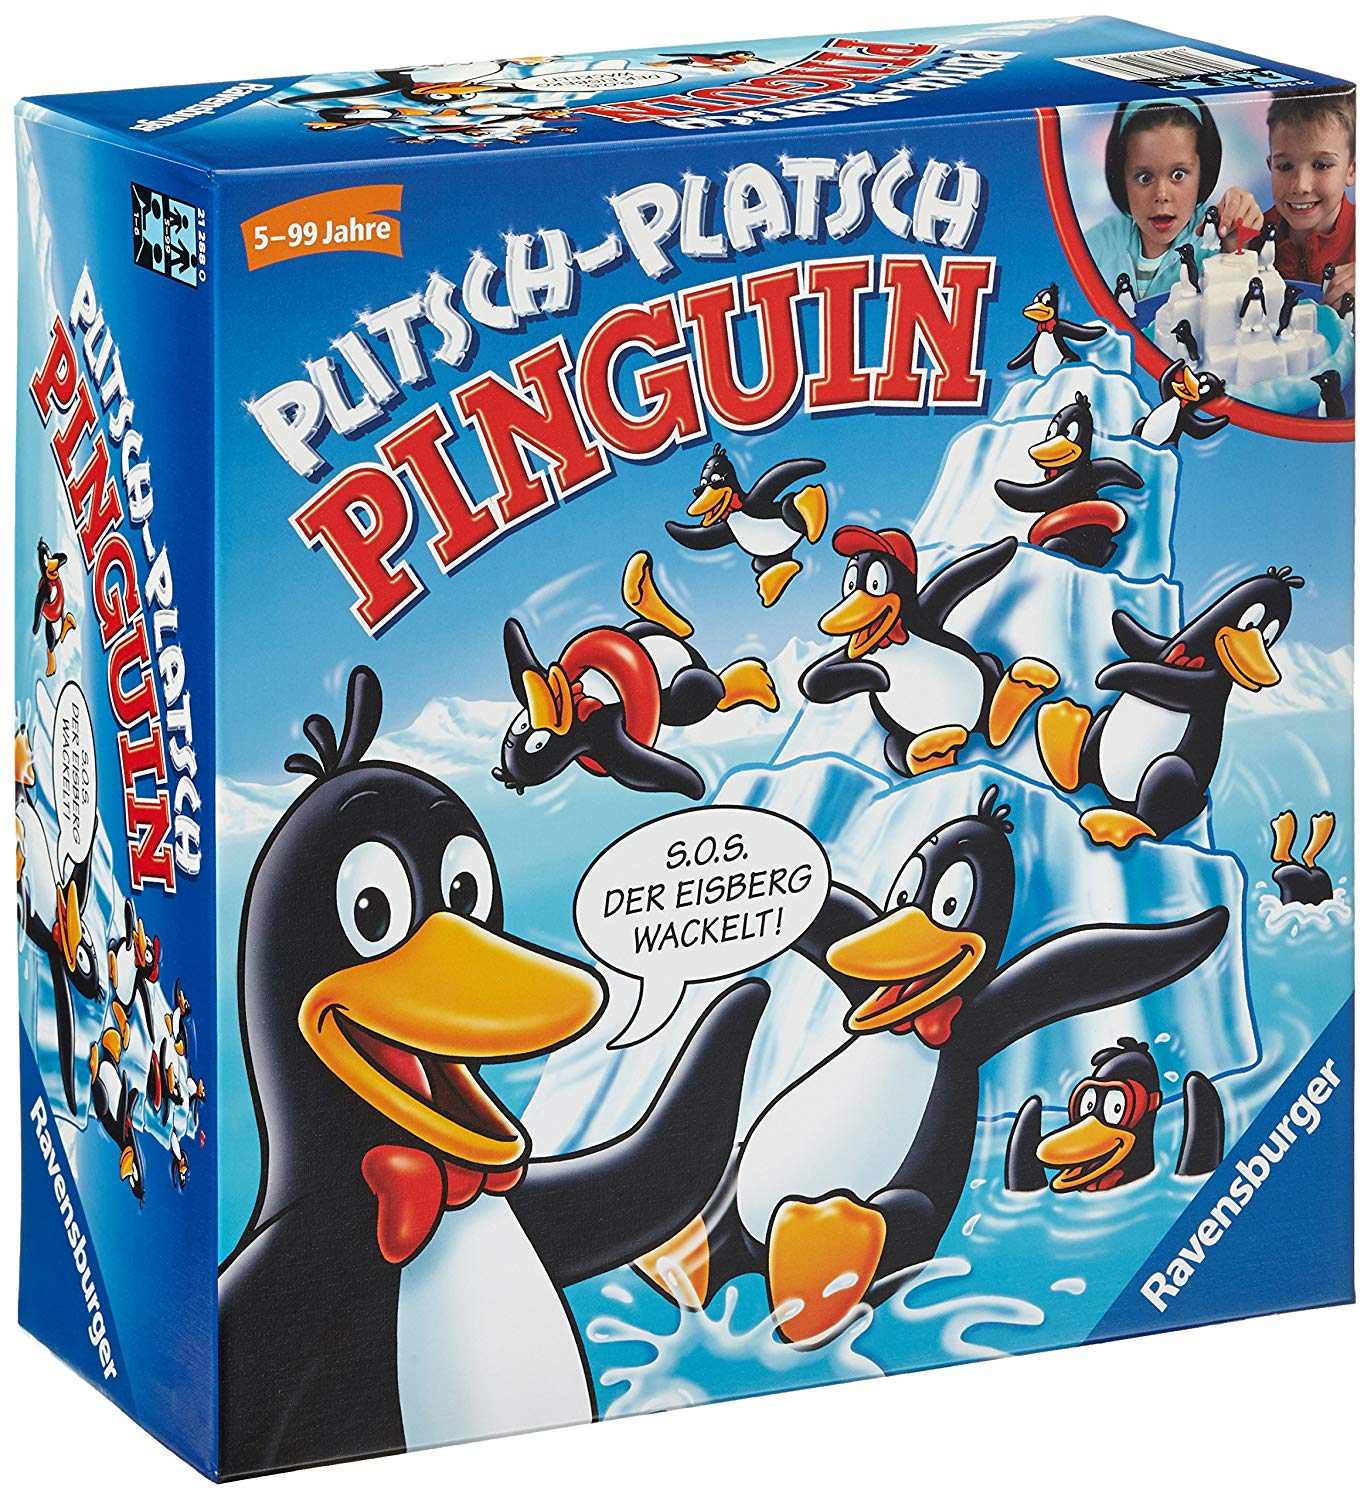 Plitsch Platsch Pinguin German Version